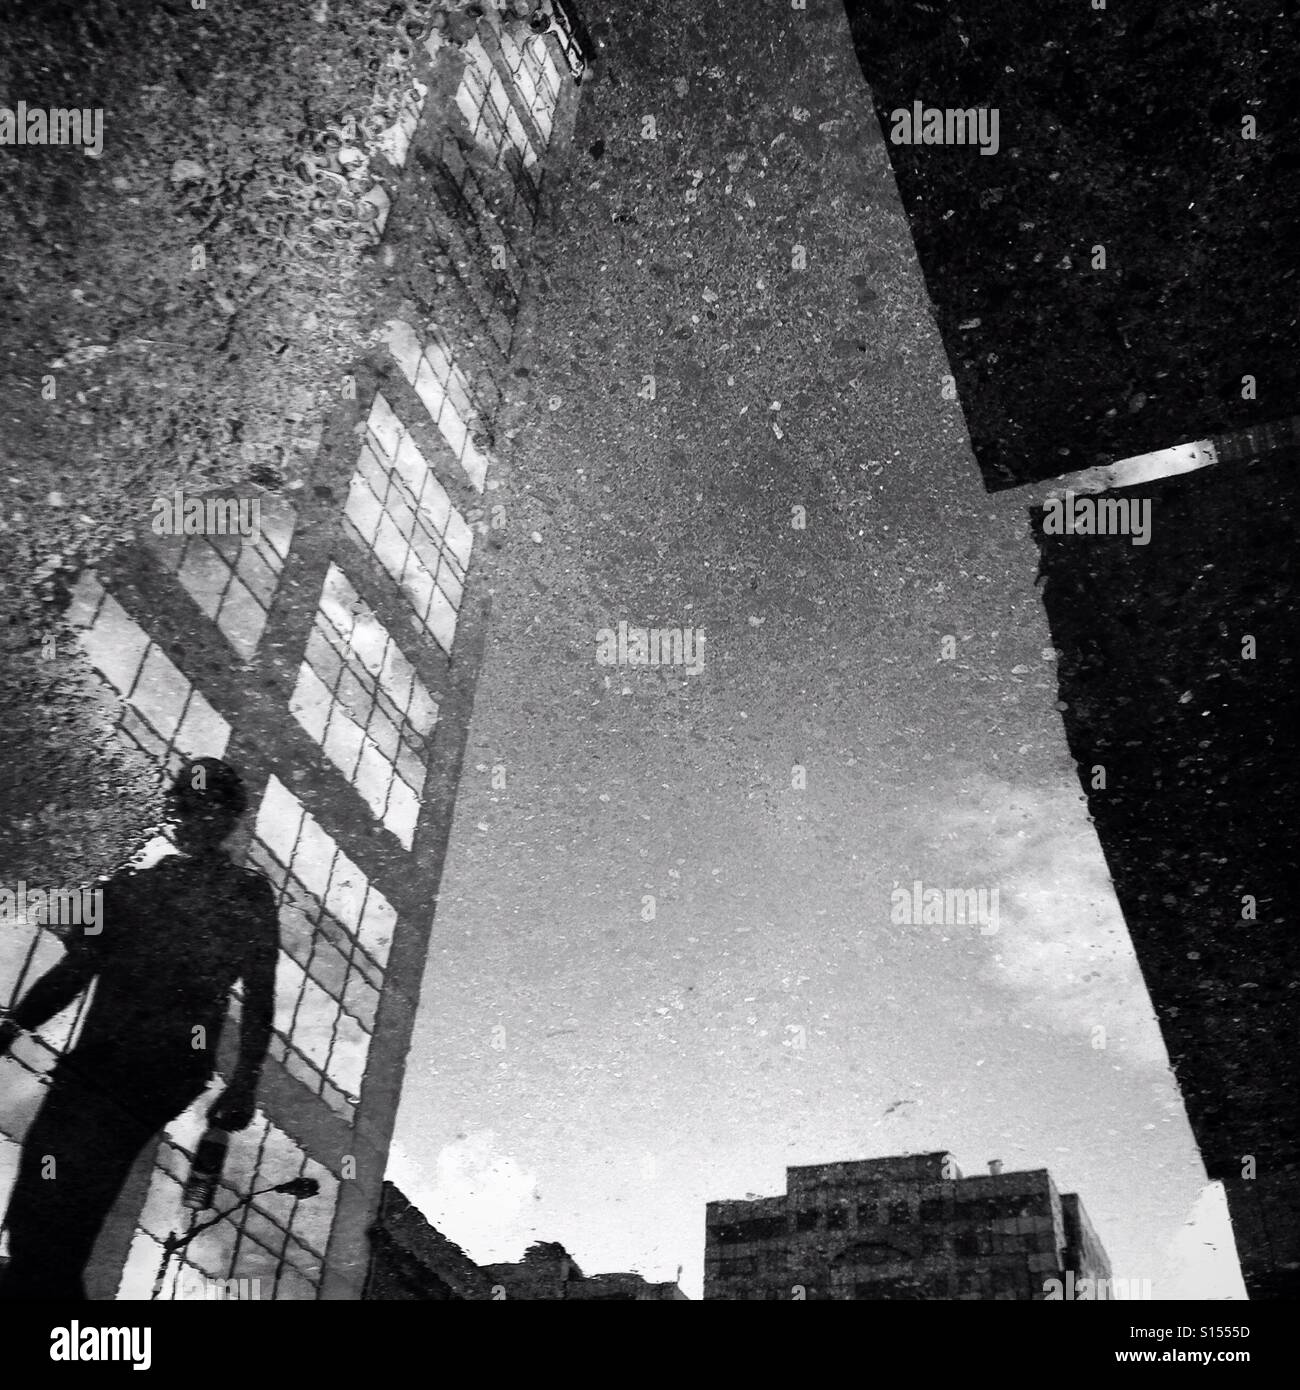 Eine Person und ein Gebäude spiegeln sich in einer Pfütze in einem städtischen Umfeld Stockfoto